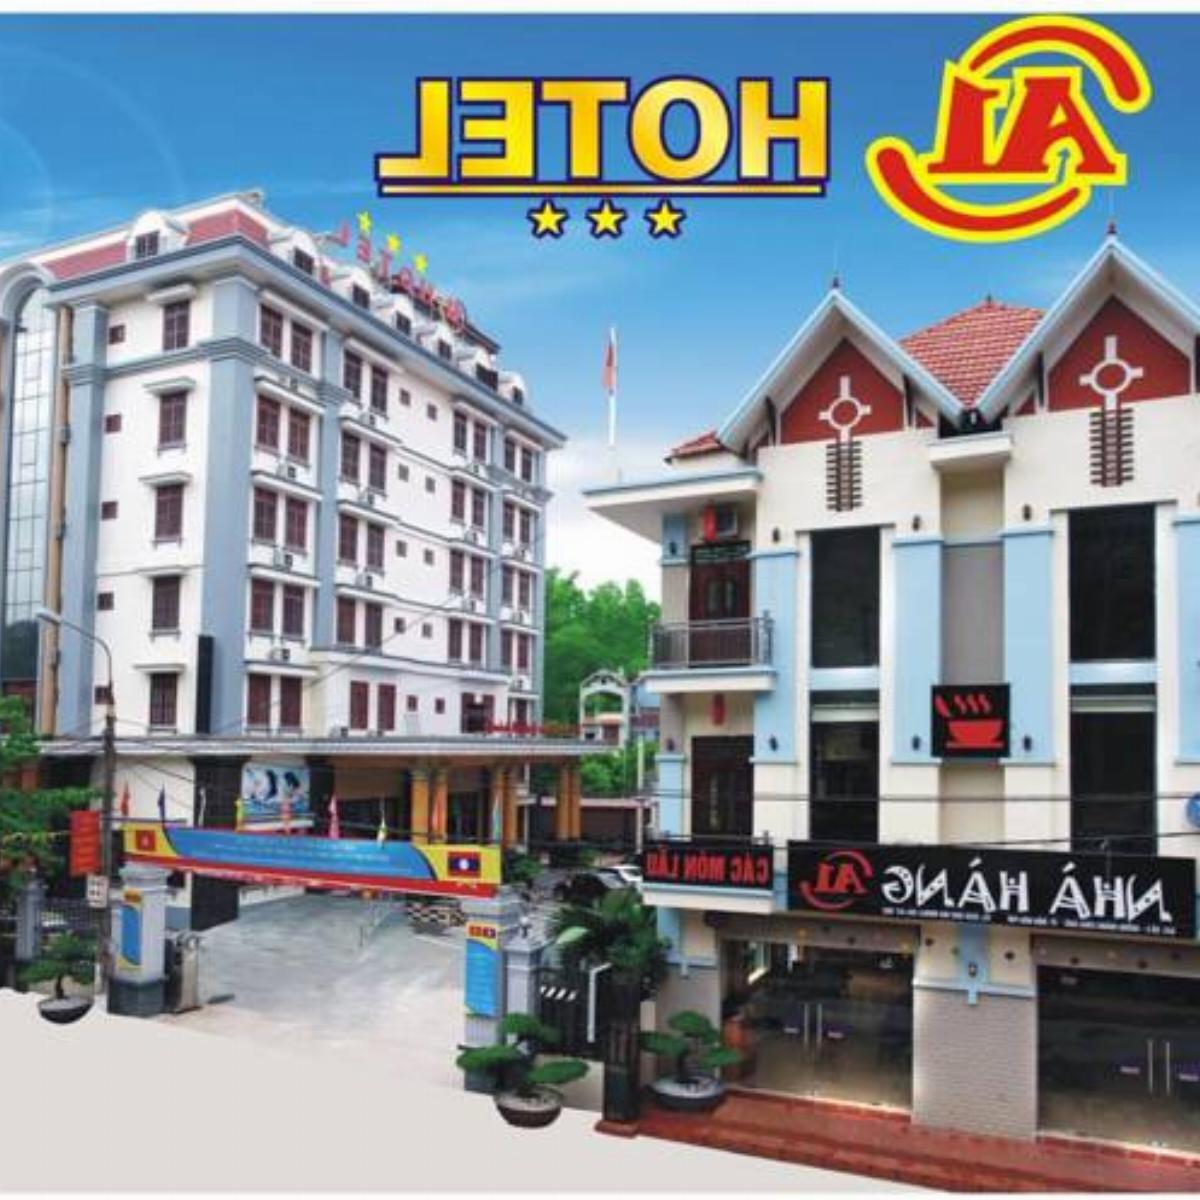 A1 Hotel - Dien Bien Phu Hotel Diện Biên Phủ Vietnam